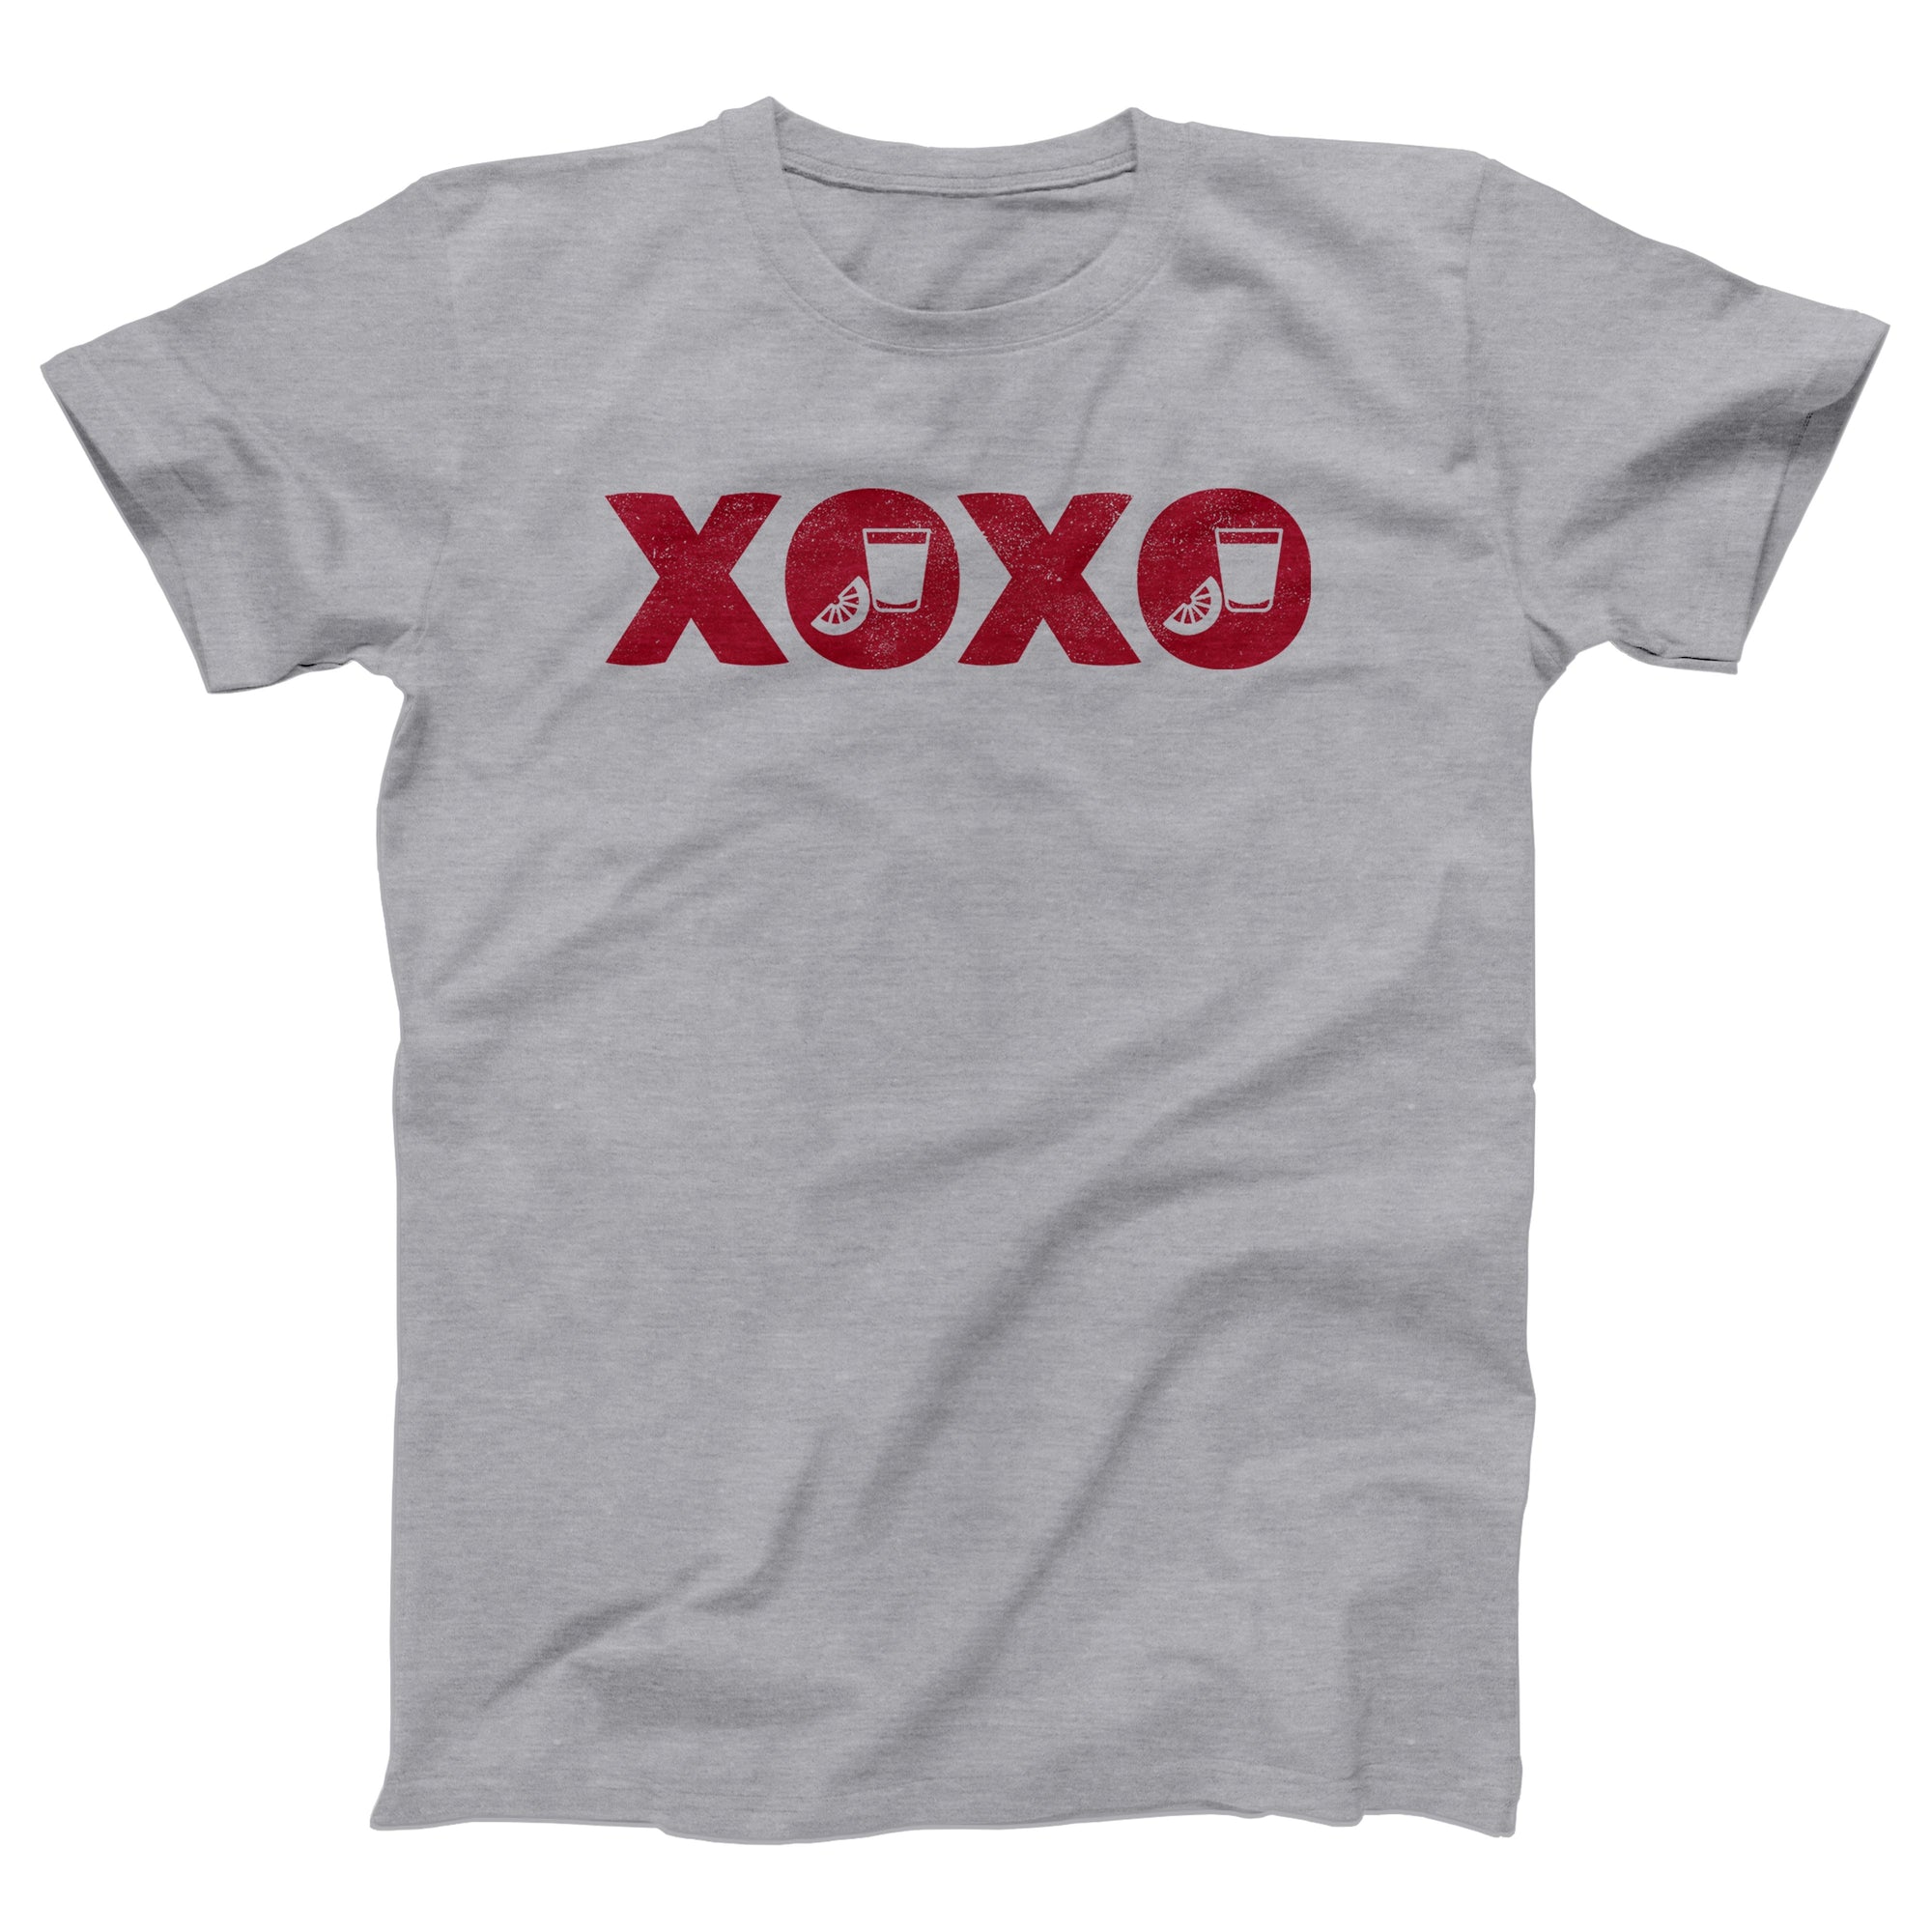 XOXO Adult Unisex T-Shirt - anishphilip